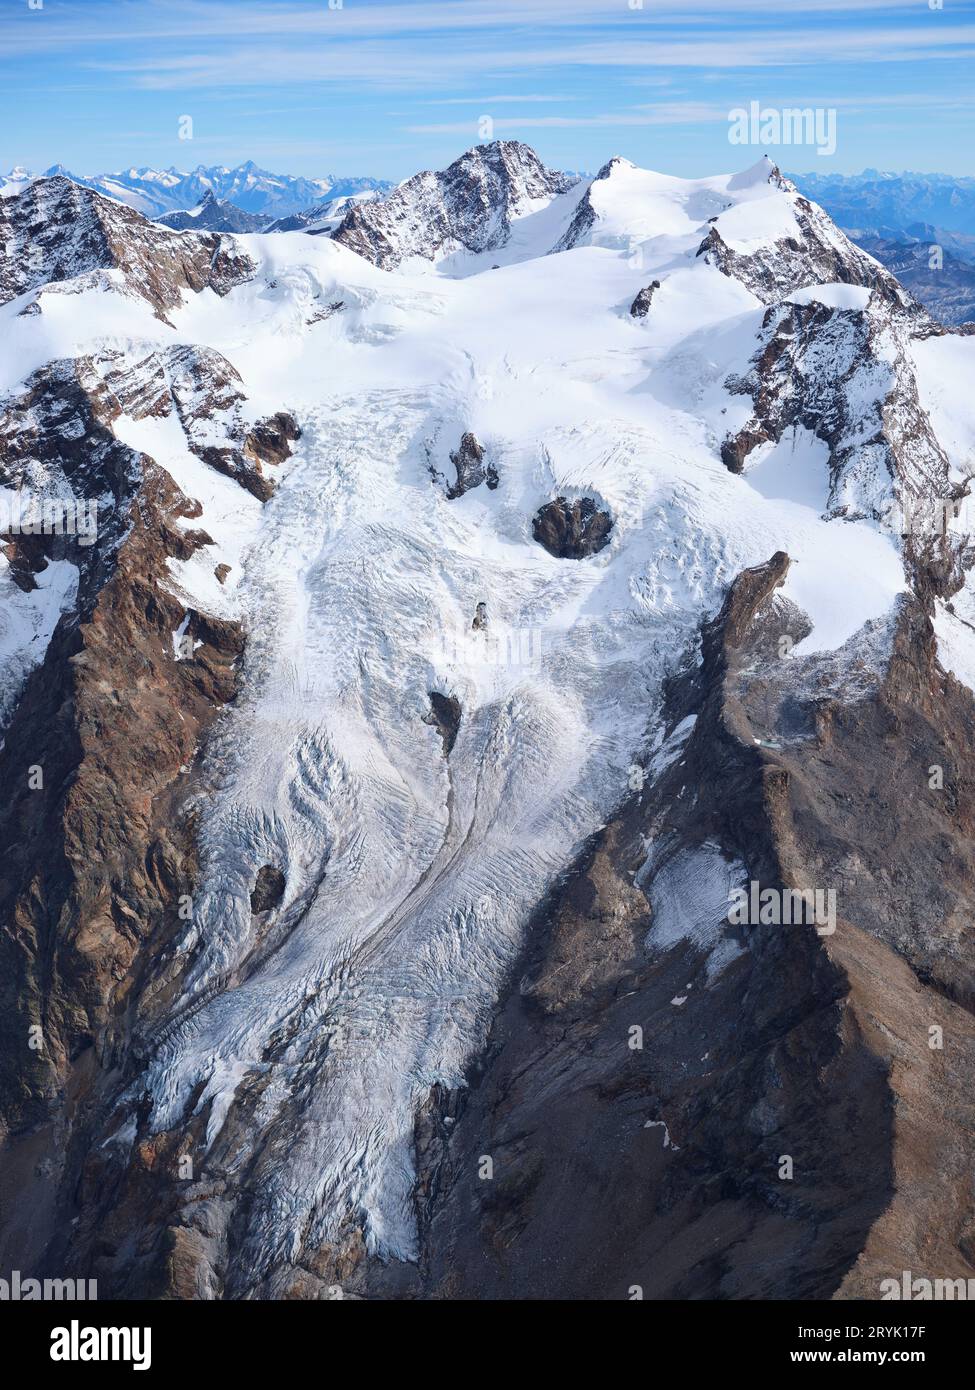 LUFTAUFNAHME. Südliche und italienische Seite des Monte Rosa Massivs mit dem Lys-Gletscher im oberen Lys-Tal. Aosta Valley, Italien. Stockfoto